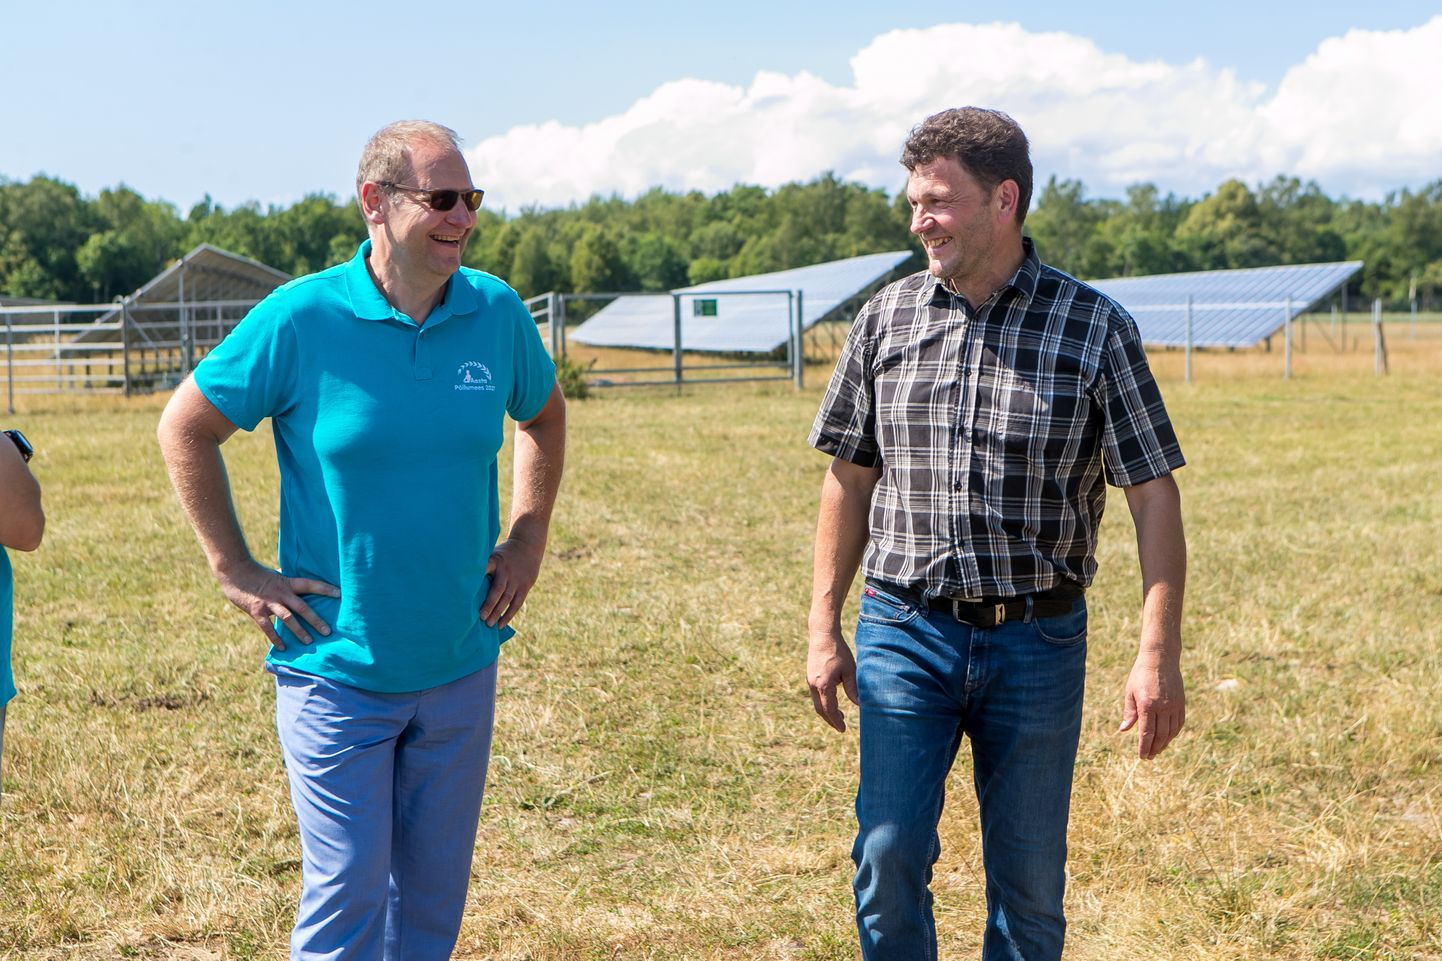 Põllumees Jaan Kiider jäi pildile koos maaeluminister Urmas Kruusega, kes koos aasta põllumees 2021 hindamiskomisjoniga Saaremaad külastas.